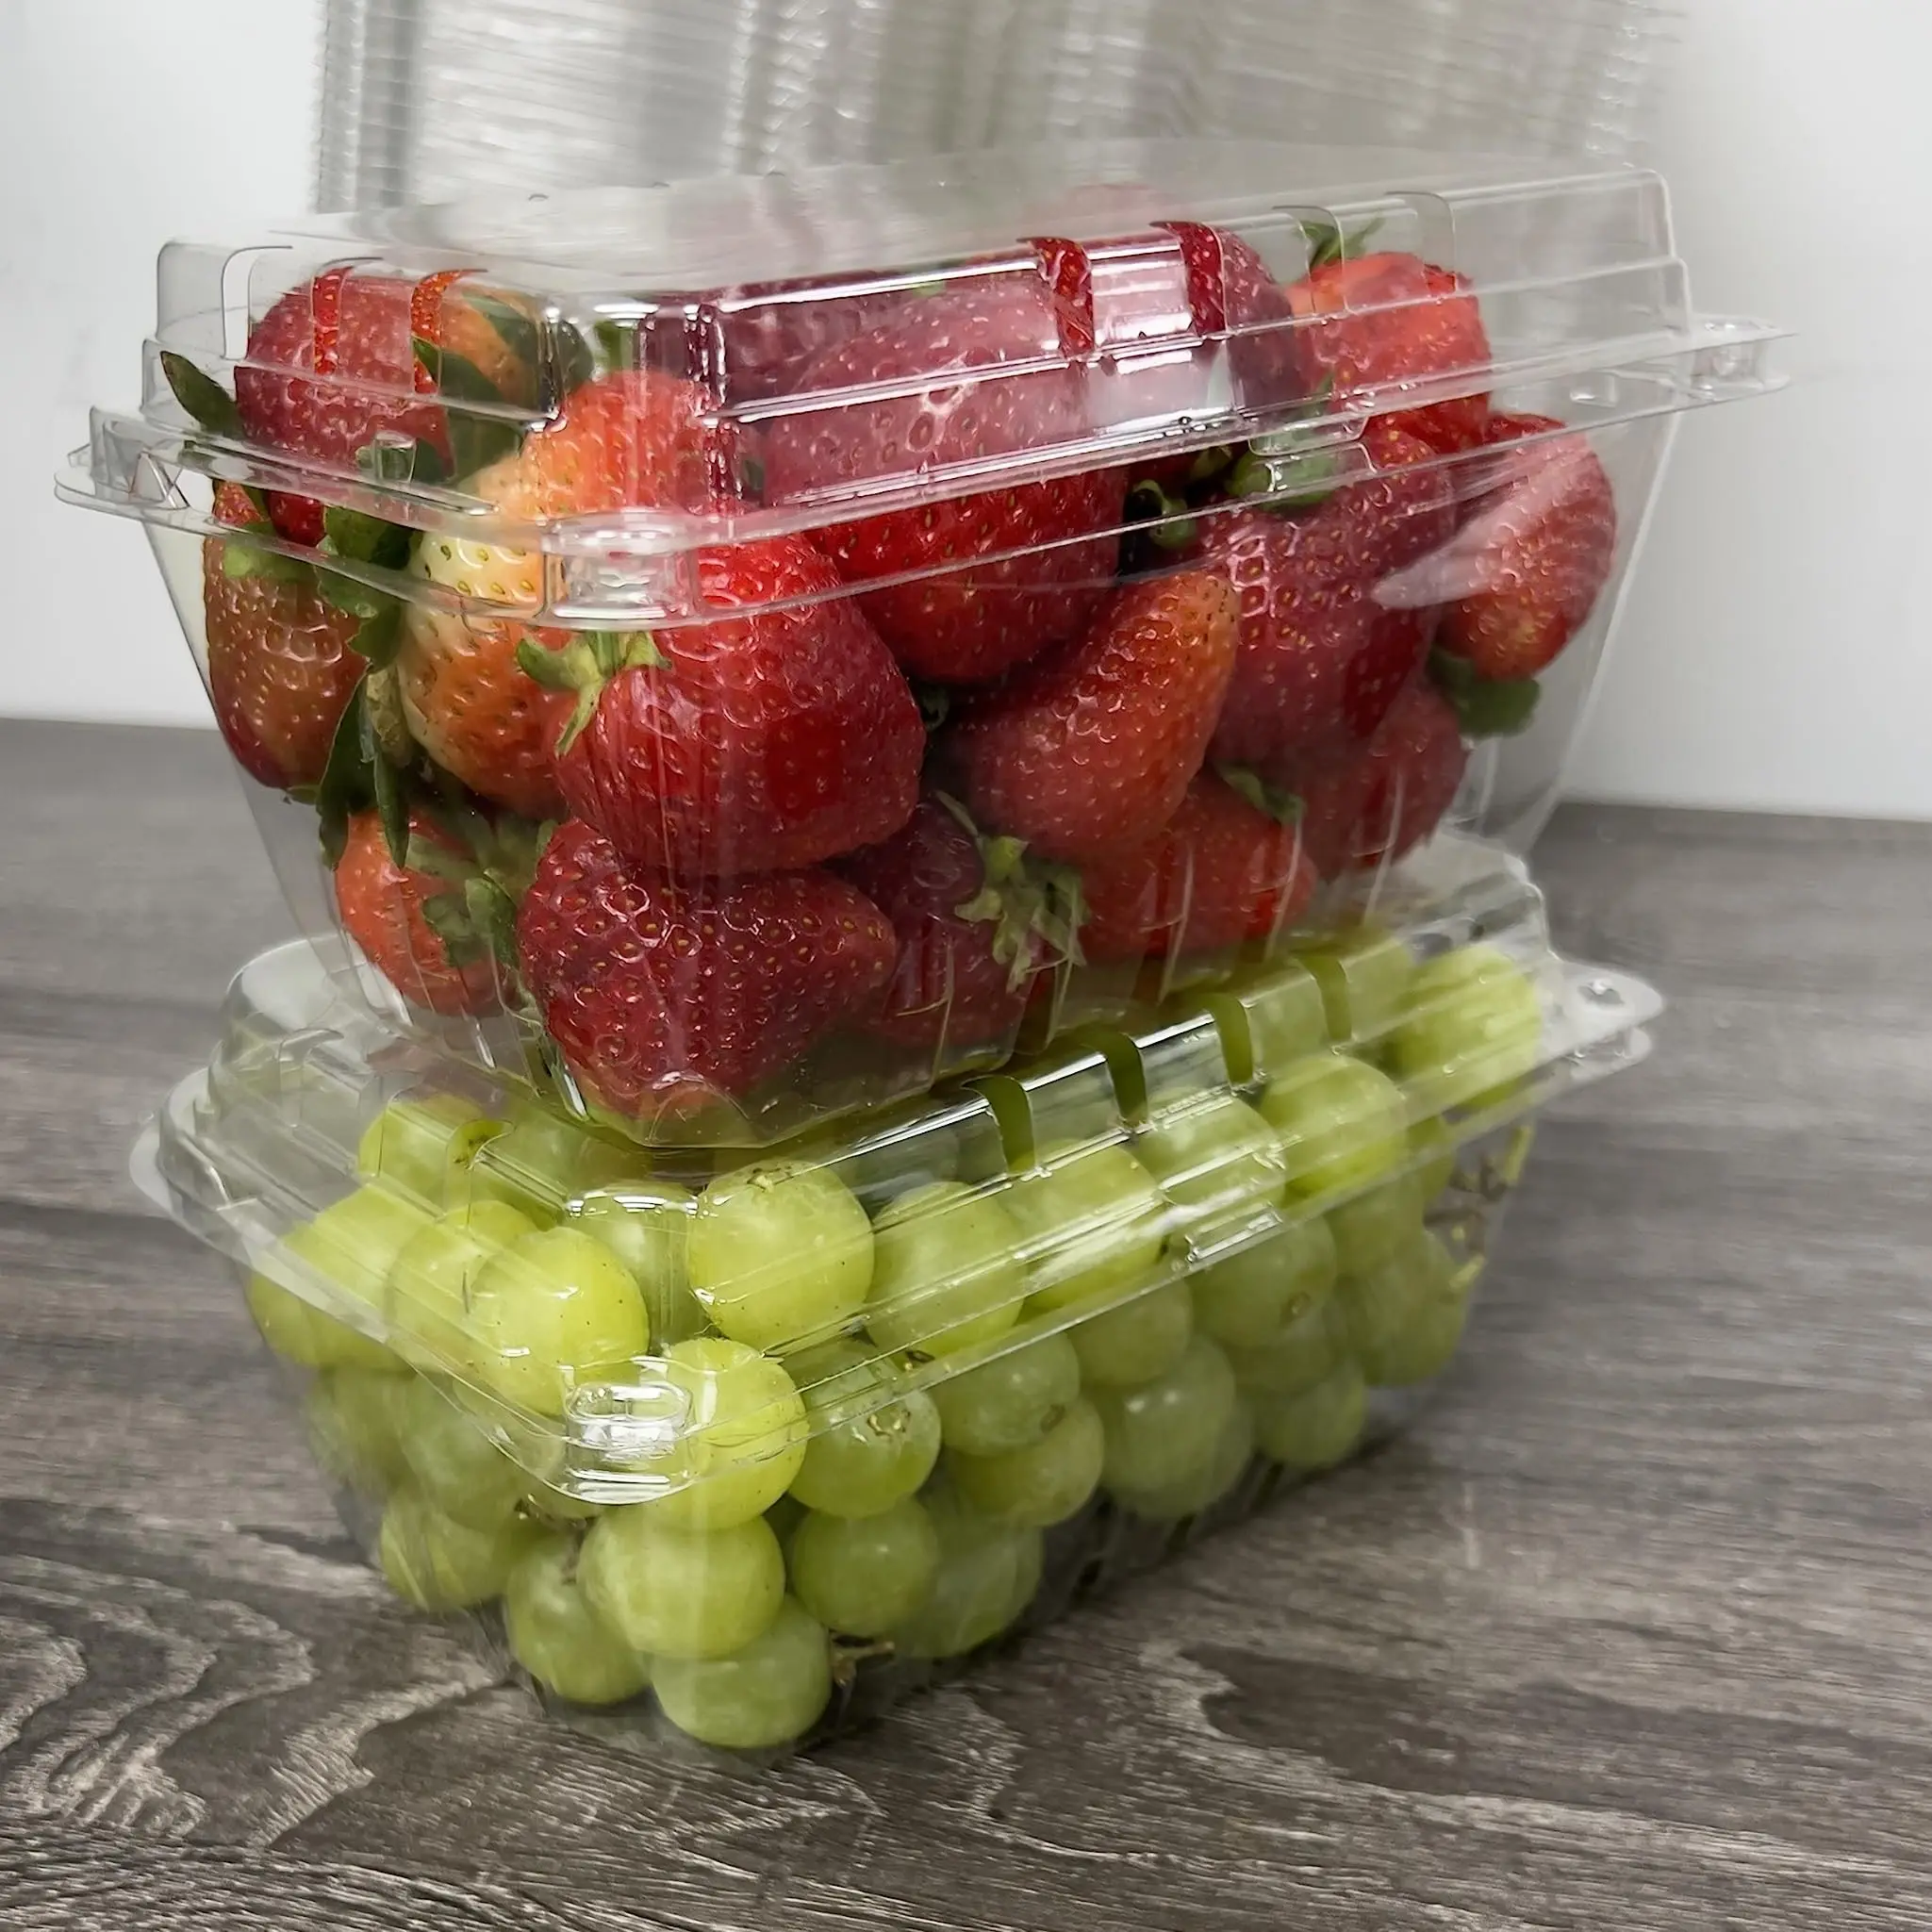 علبة بلاستيكية شفافة لتعبئة صدفات الفواكه 1 رطل علبة طرية لتعبئة الفواكه الطازجة والطماطم والعنب والفراولة للمزرعات